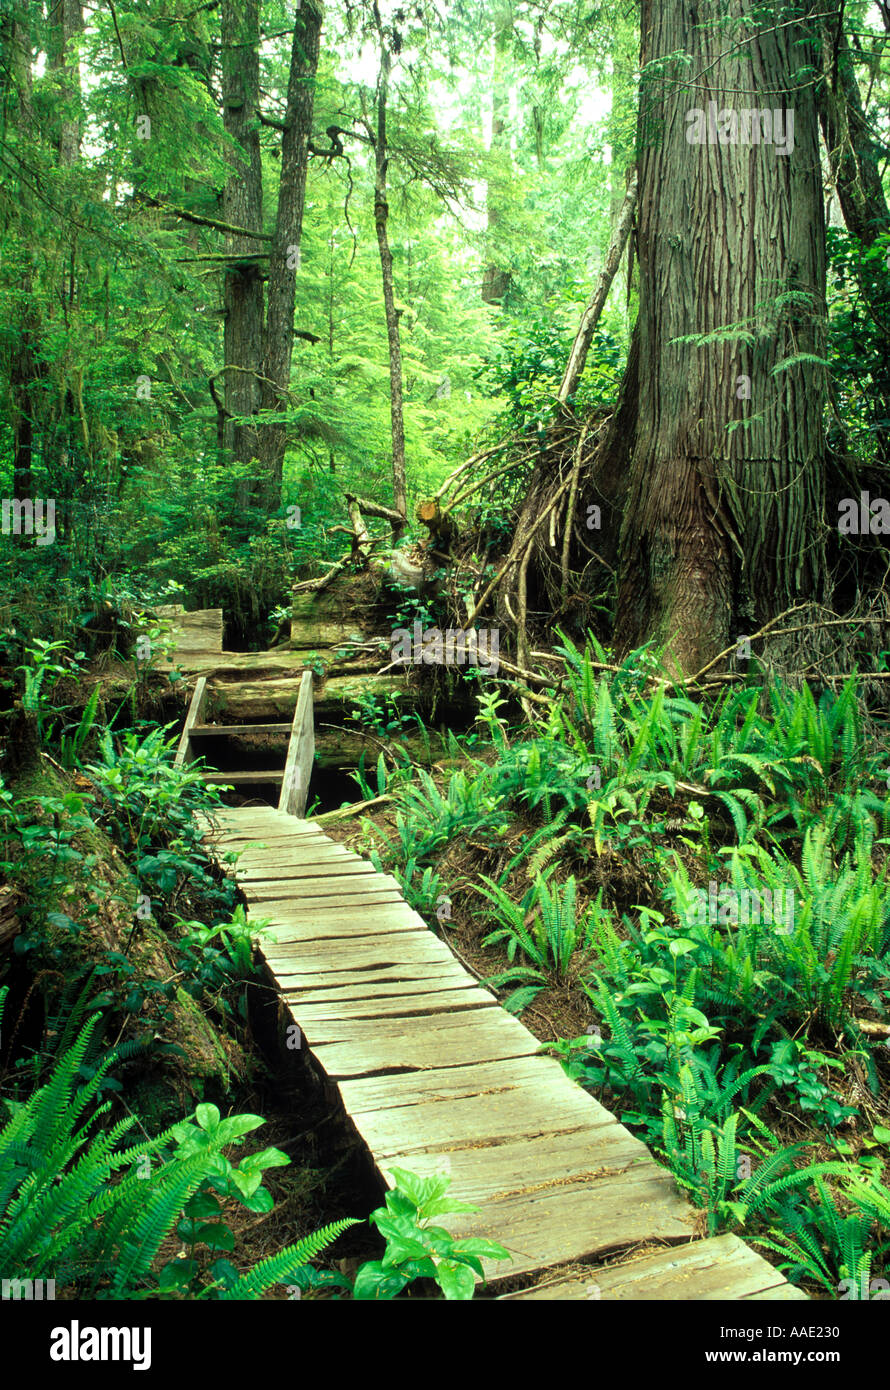 Holzsteg schneiden durch kanadischen Regenwald auf der einsamen Insel wissen als Mears Insel liegt in der Nähe von Tofino, Vancouver Island, Kanada Stockfoto